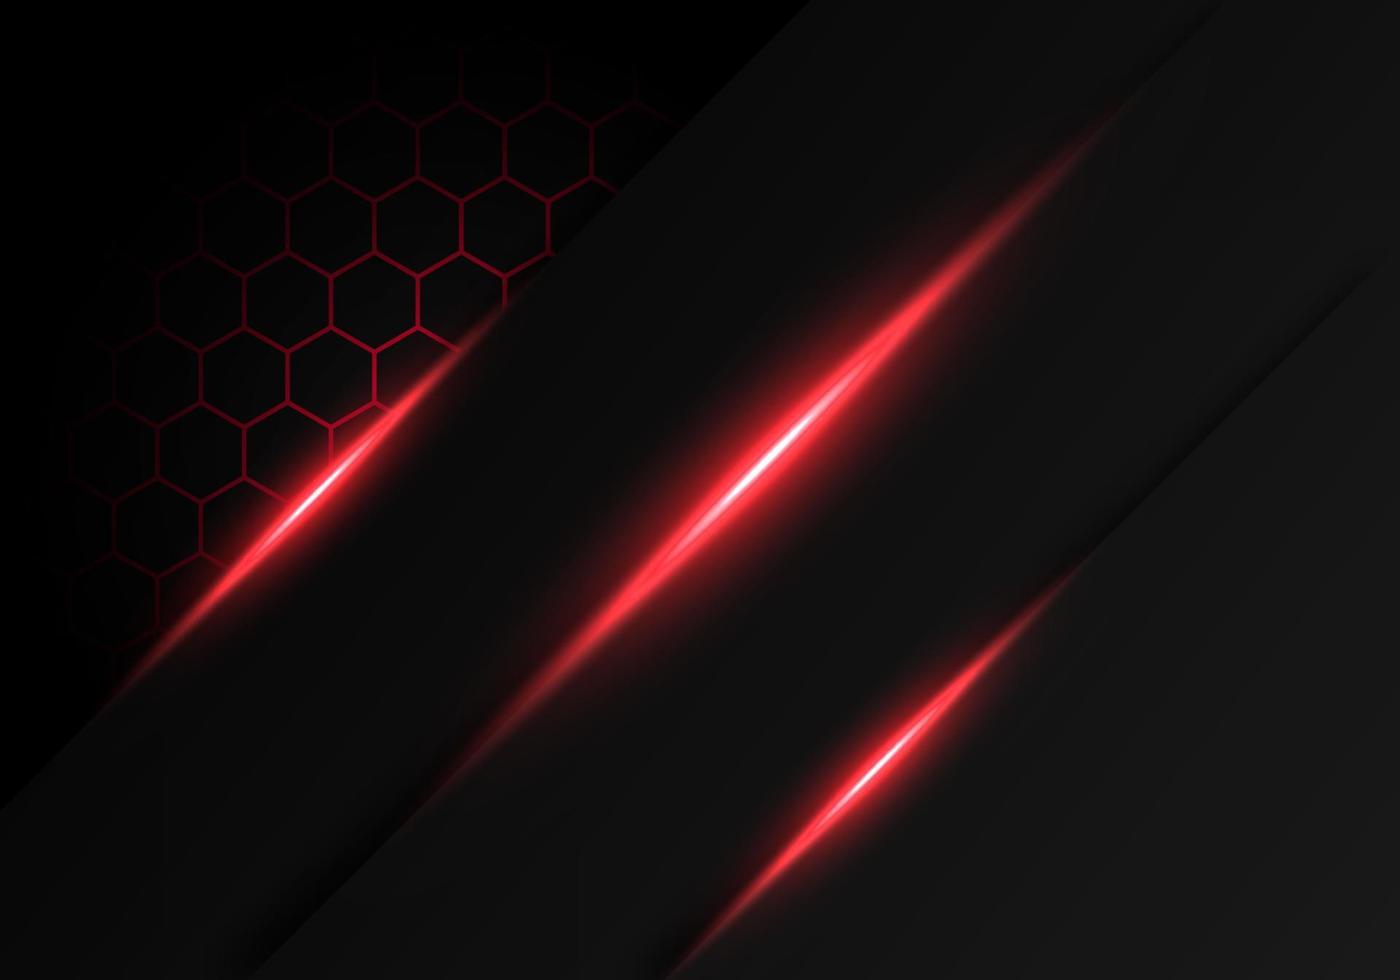 astratto grigio scuro metallico sovrapposizione luce rossa esagono design moderno lusso tecnologia futuristica sfondo vettore